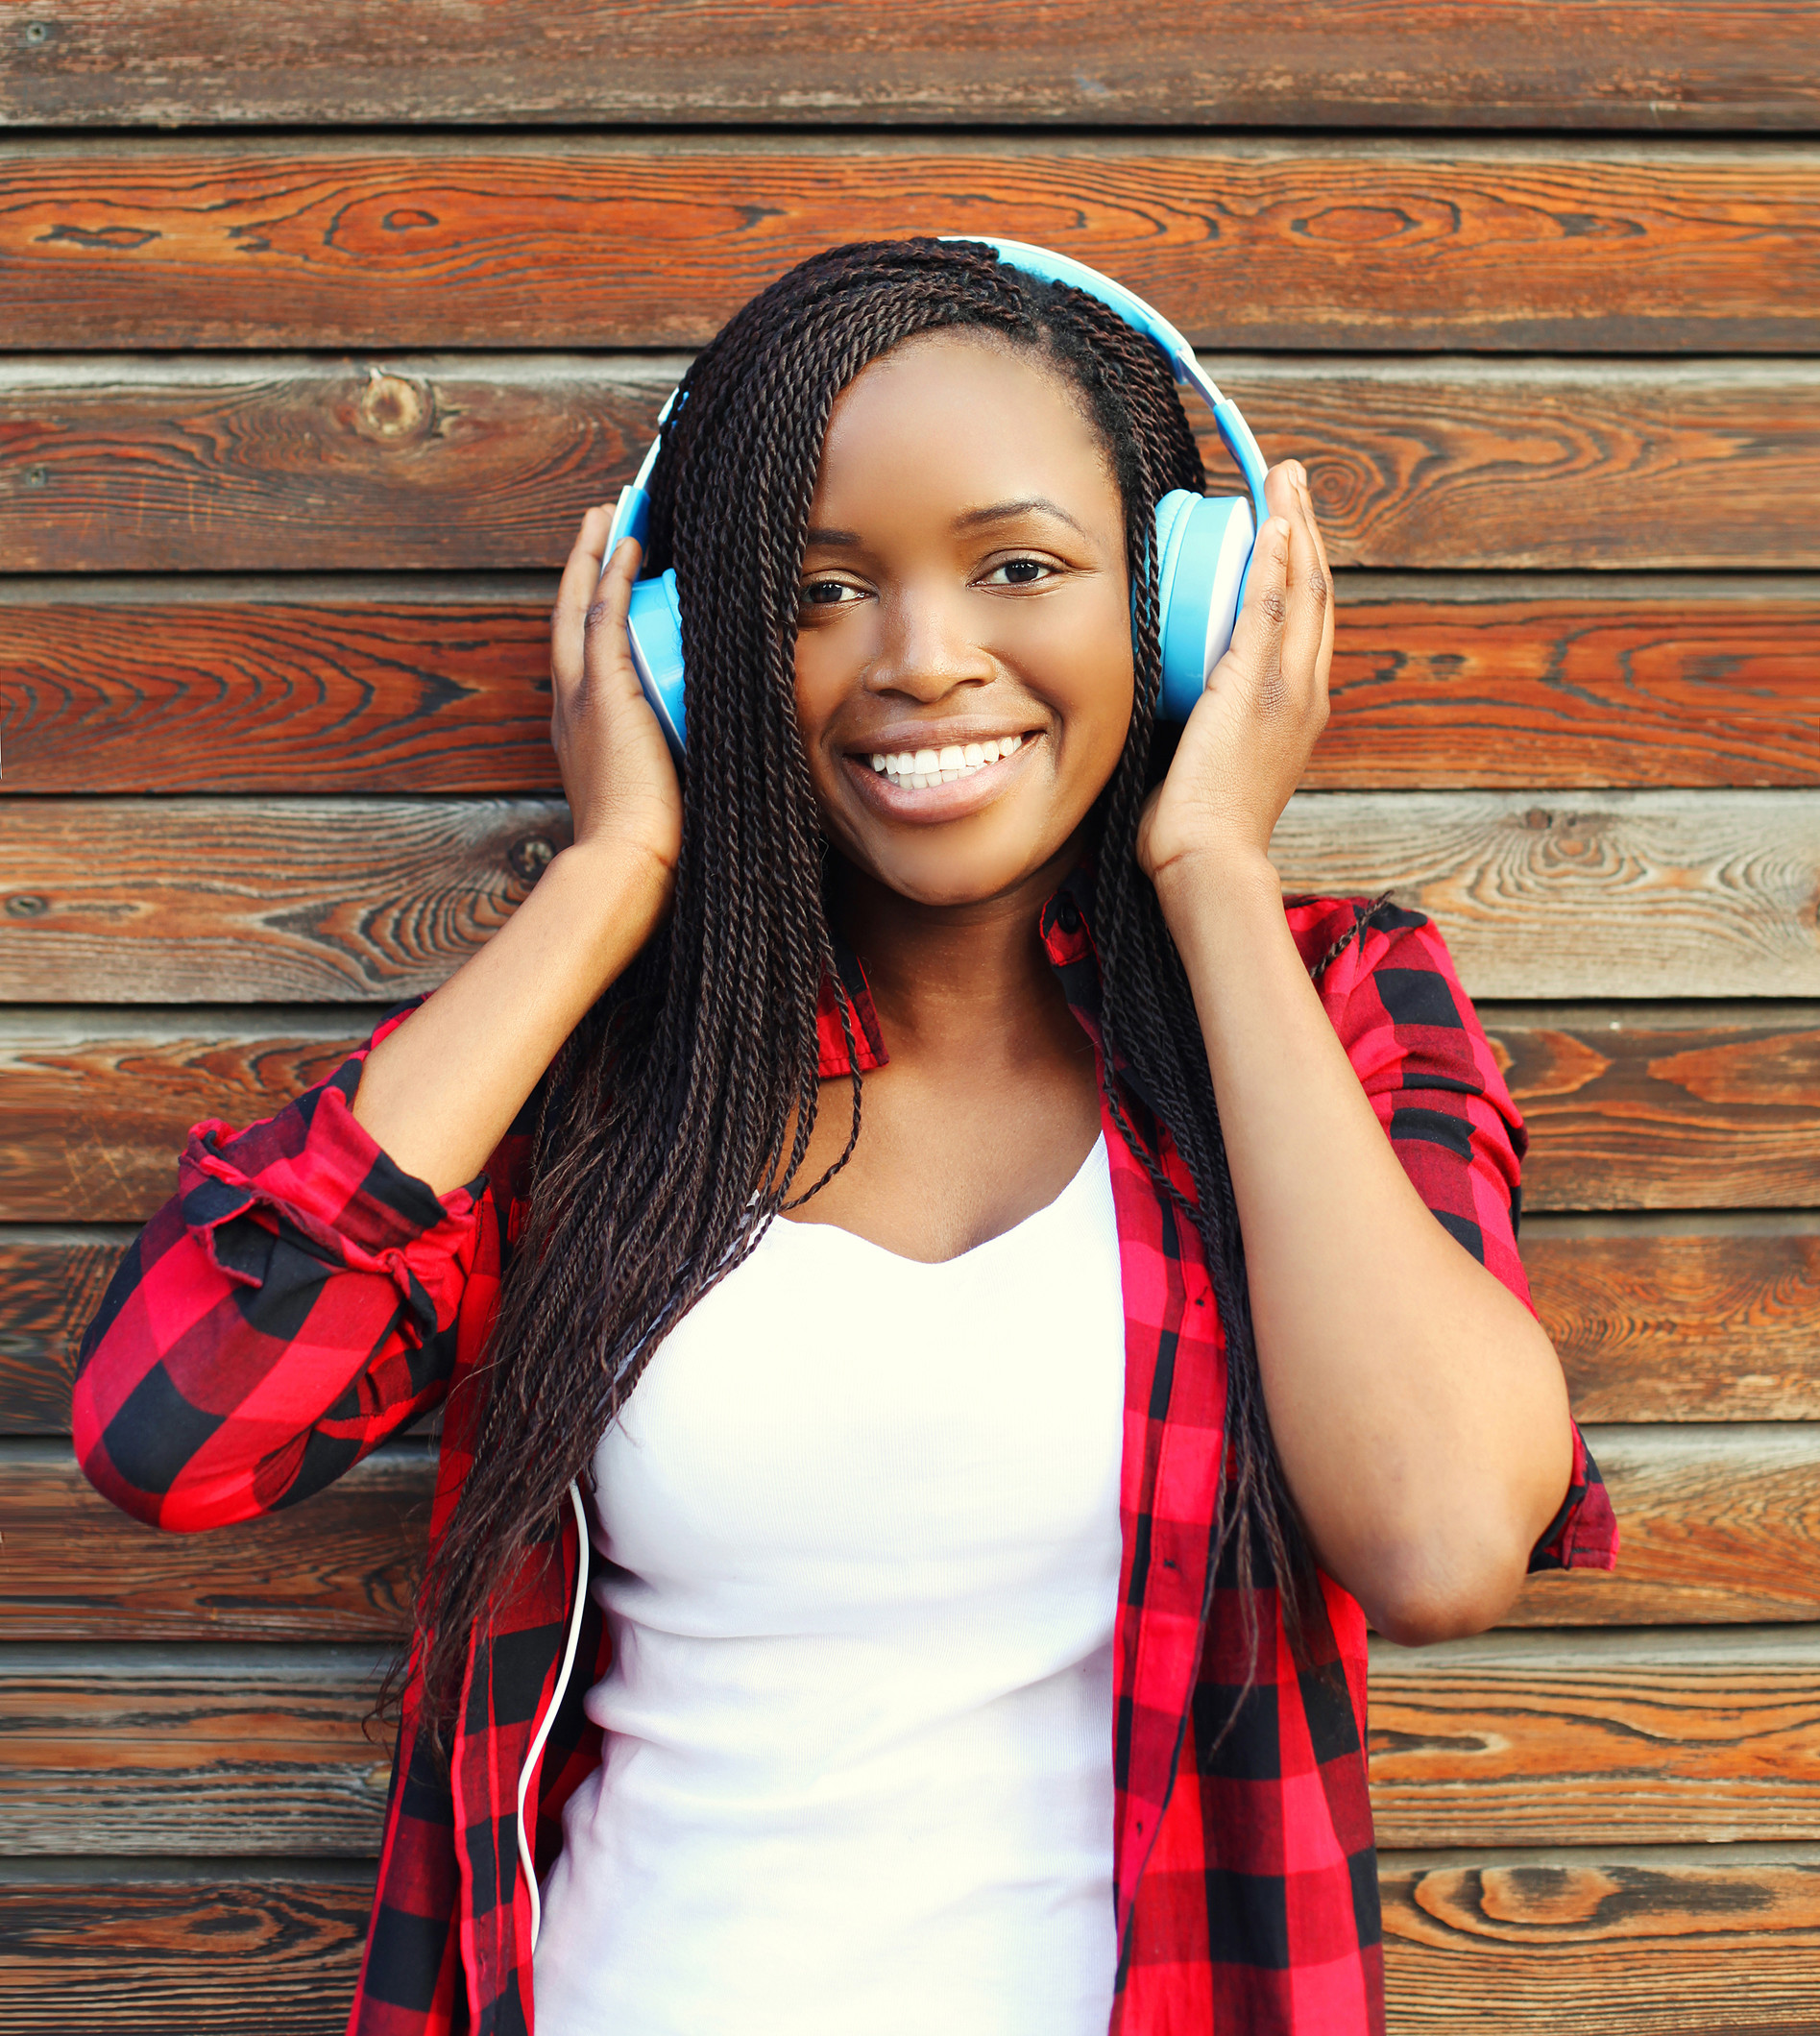 Fröhlich lächelnde junge Frau, die Musik hört.